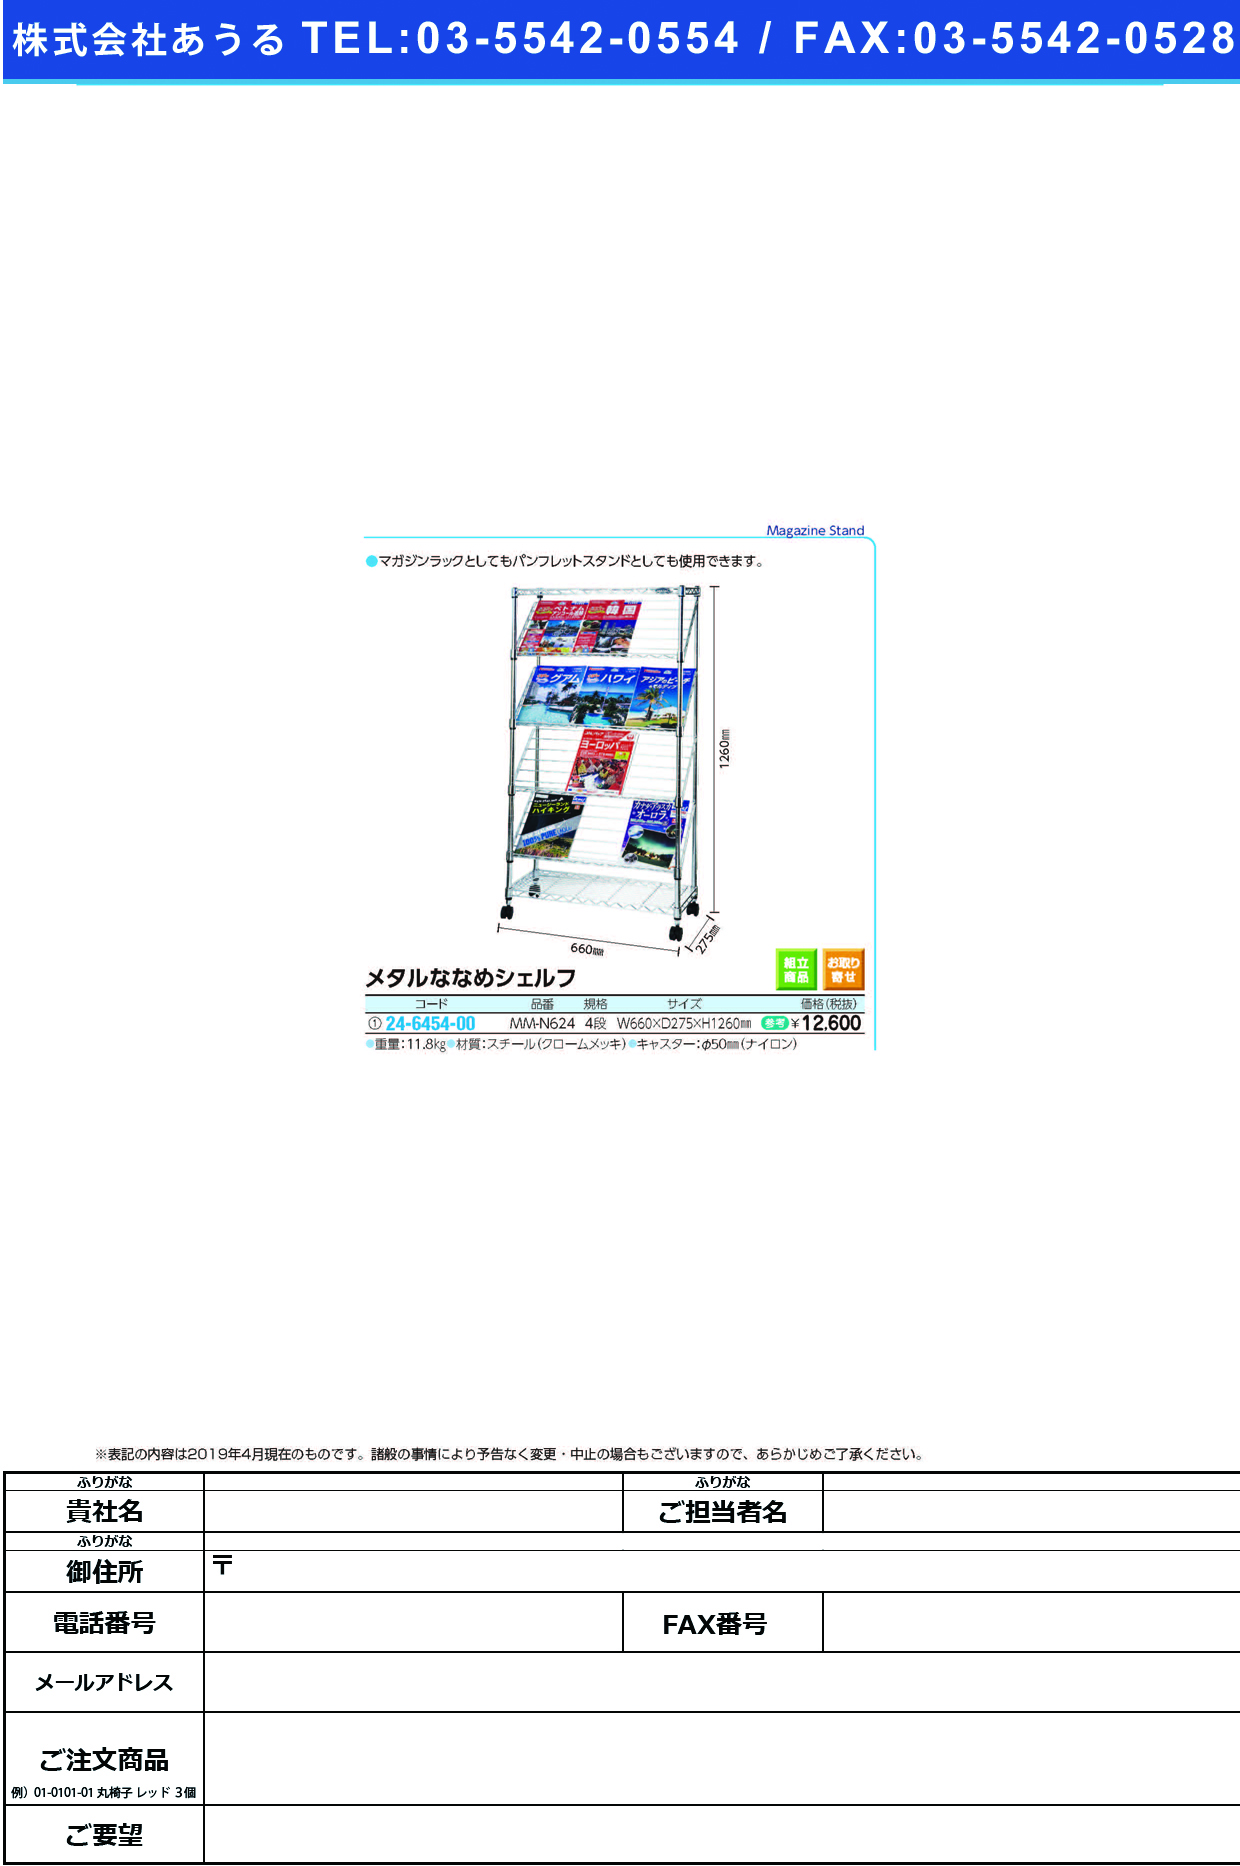 (24-6454-00)メタルななめシェルフ MM-N624(ﾎﾜｲﾄ) ﾒﾀﾙﾅﾅﾒｼｪﾙﾌ【1台単位】【2019年カタログ商品】